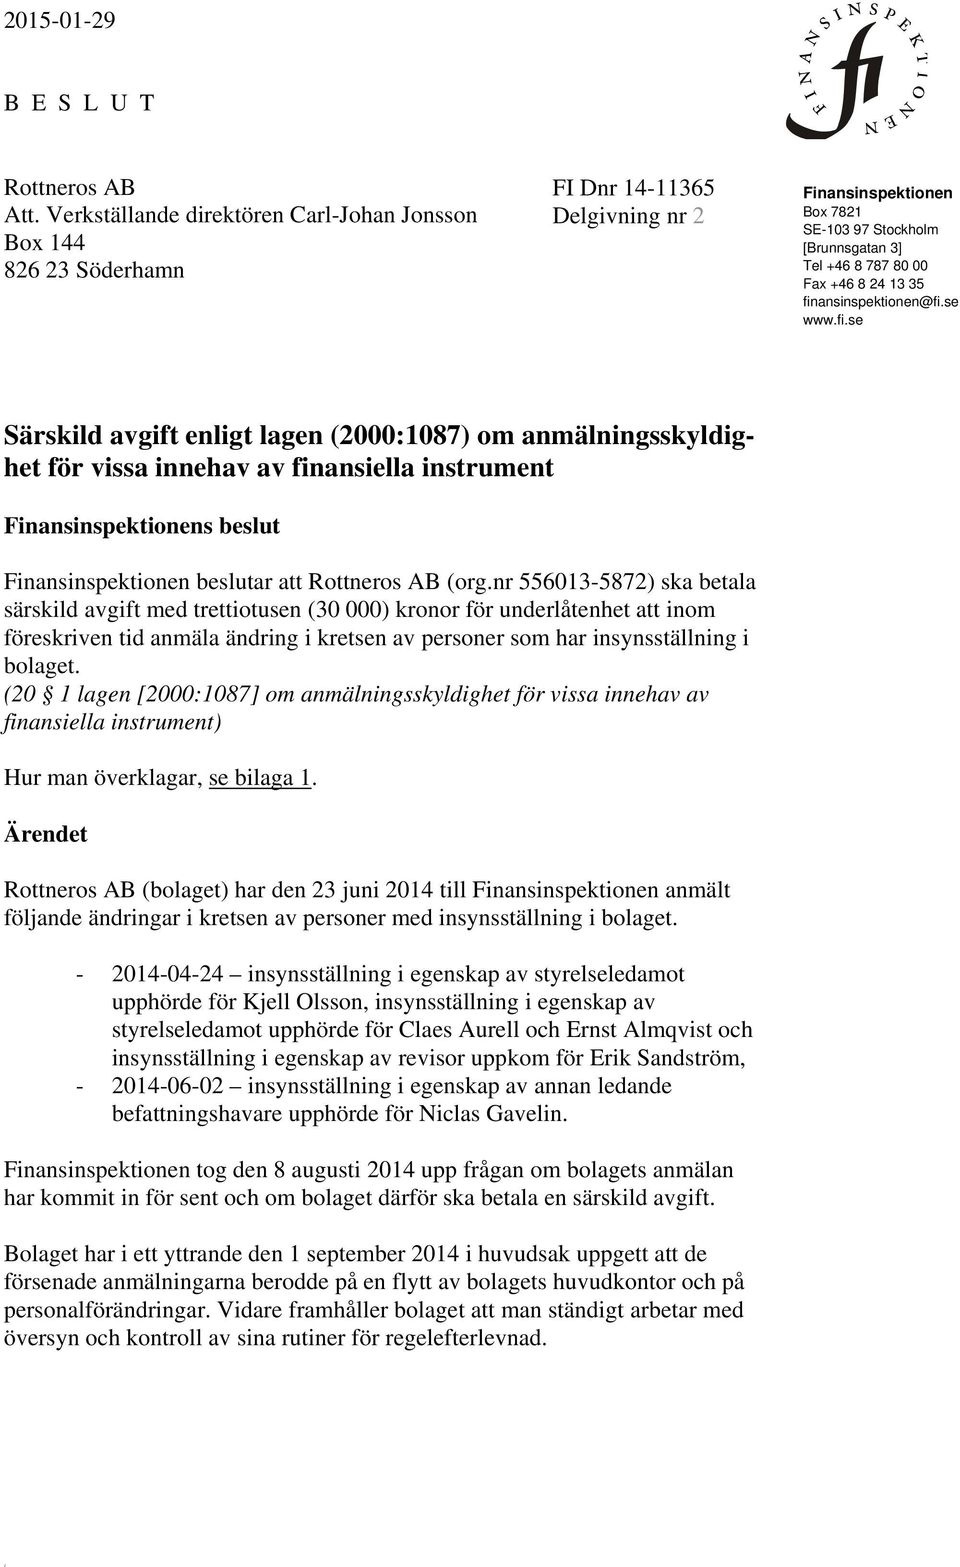 13 35 finansinspektionen@fi.se www.fi.se Särskild avgift enligt lagen (2000:1087) om anmälningsskyldighet för vissa innehav av finansiella instrument Finansinspektionens beslut Finansinspektionen beslutar att Rottneros AB (org.